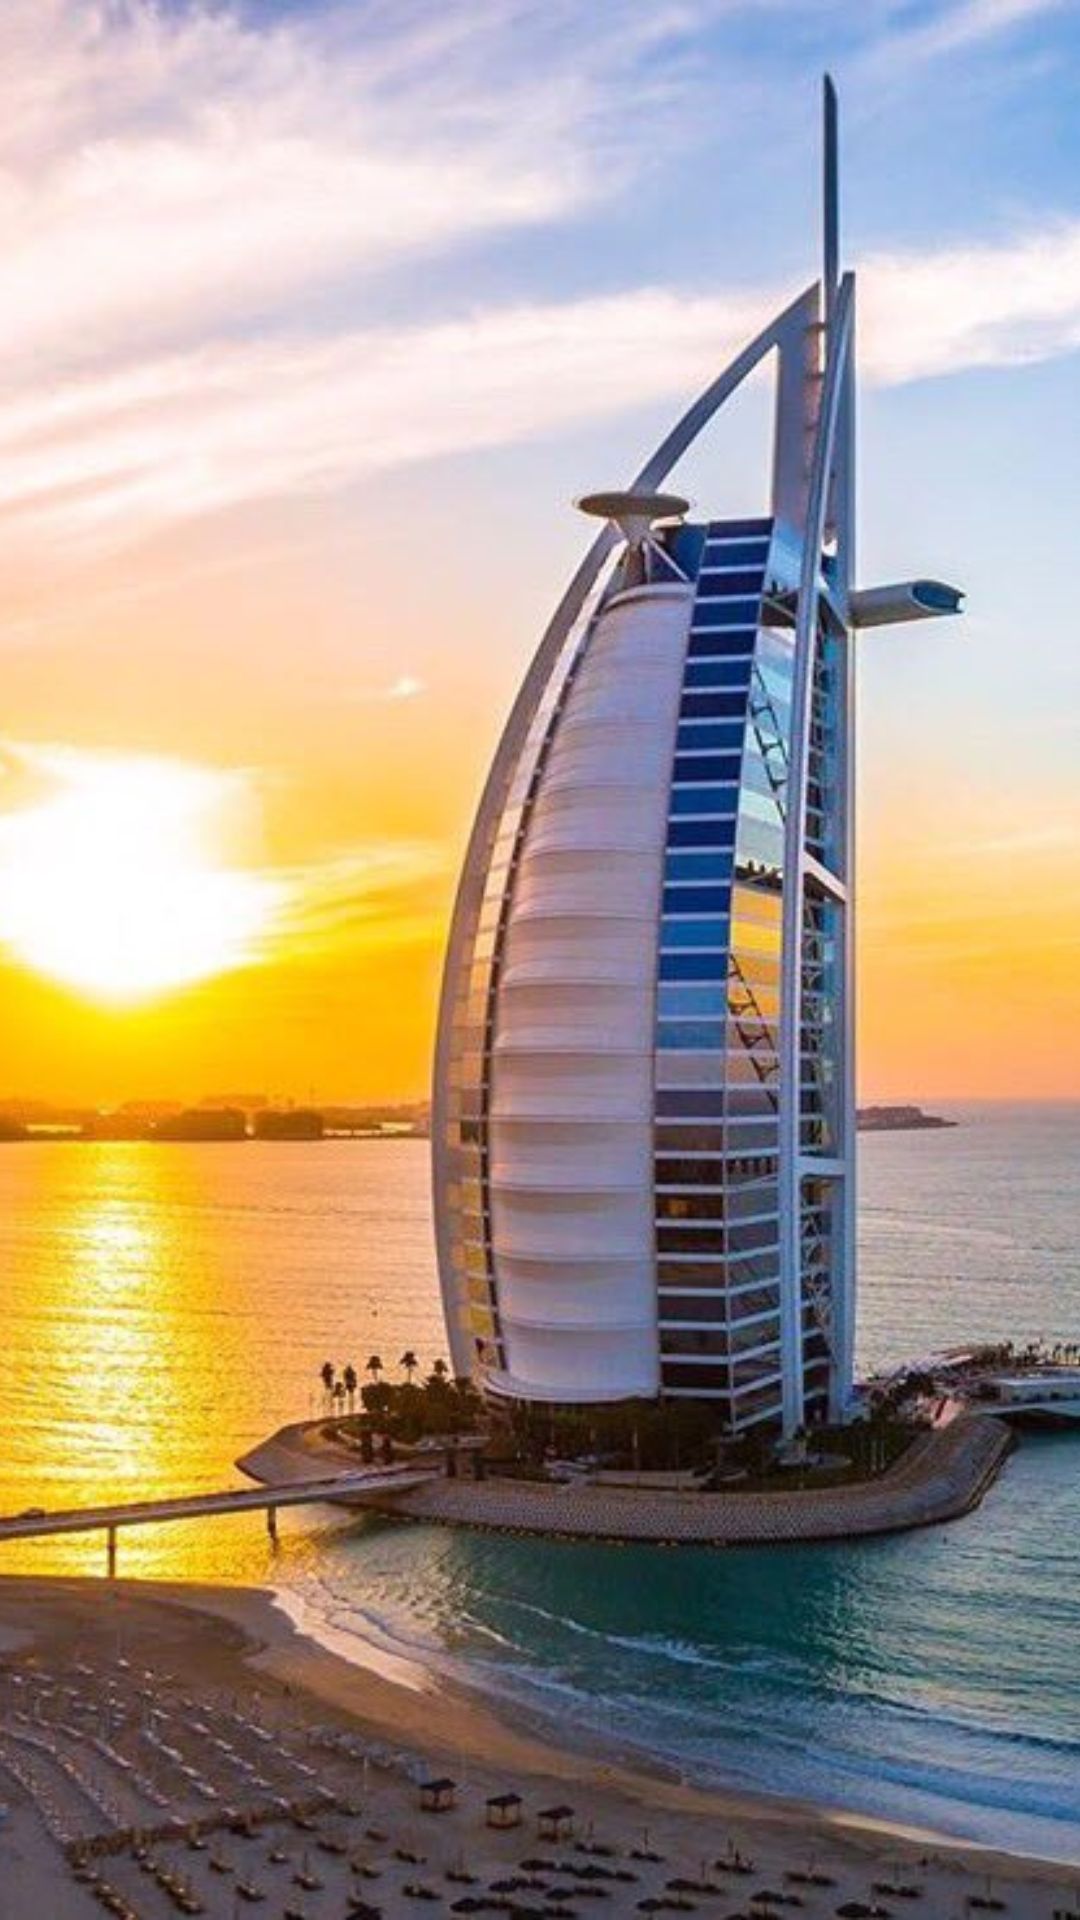 दुबई का सबसे महंगा होटल, एक रात के किराए में आ जाएगी लग्जरी कार